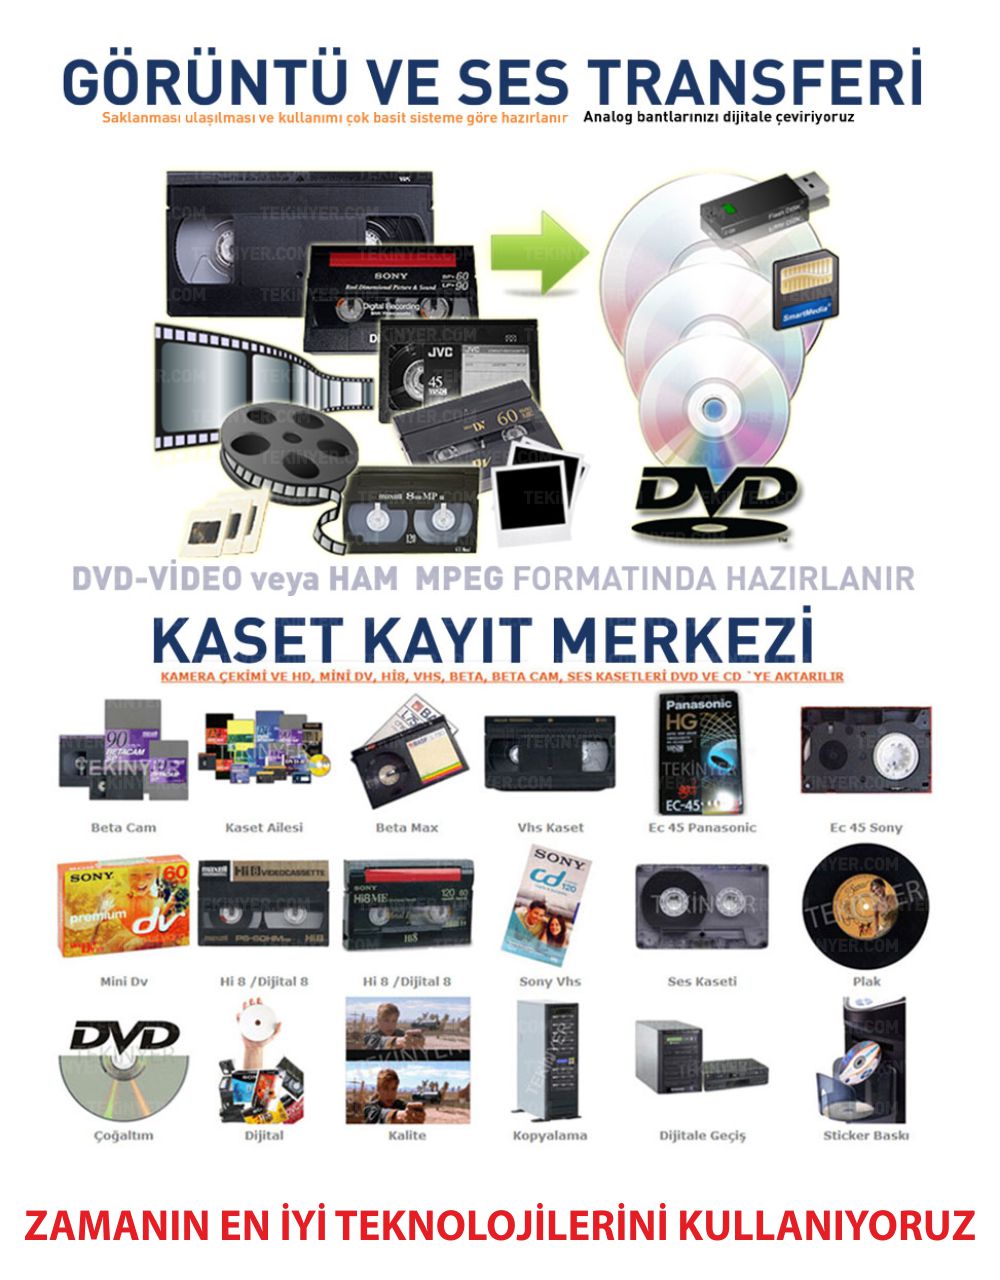 VHS Kasetten Kayıt Aktarım Kasetten Zamanın en iyi teknolijilerini kullanana Aktarım Kayıt Merkezi